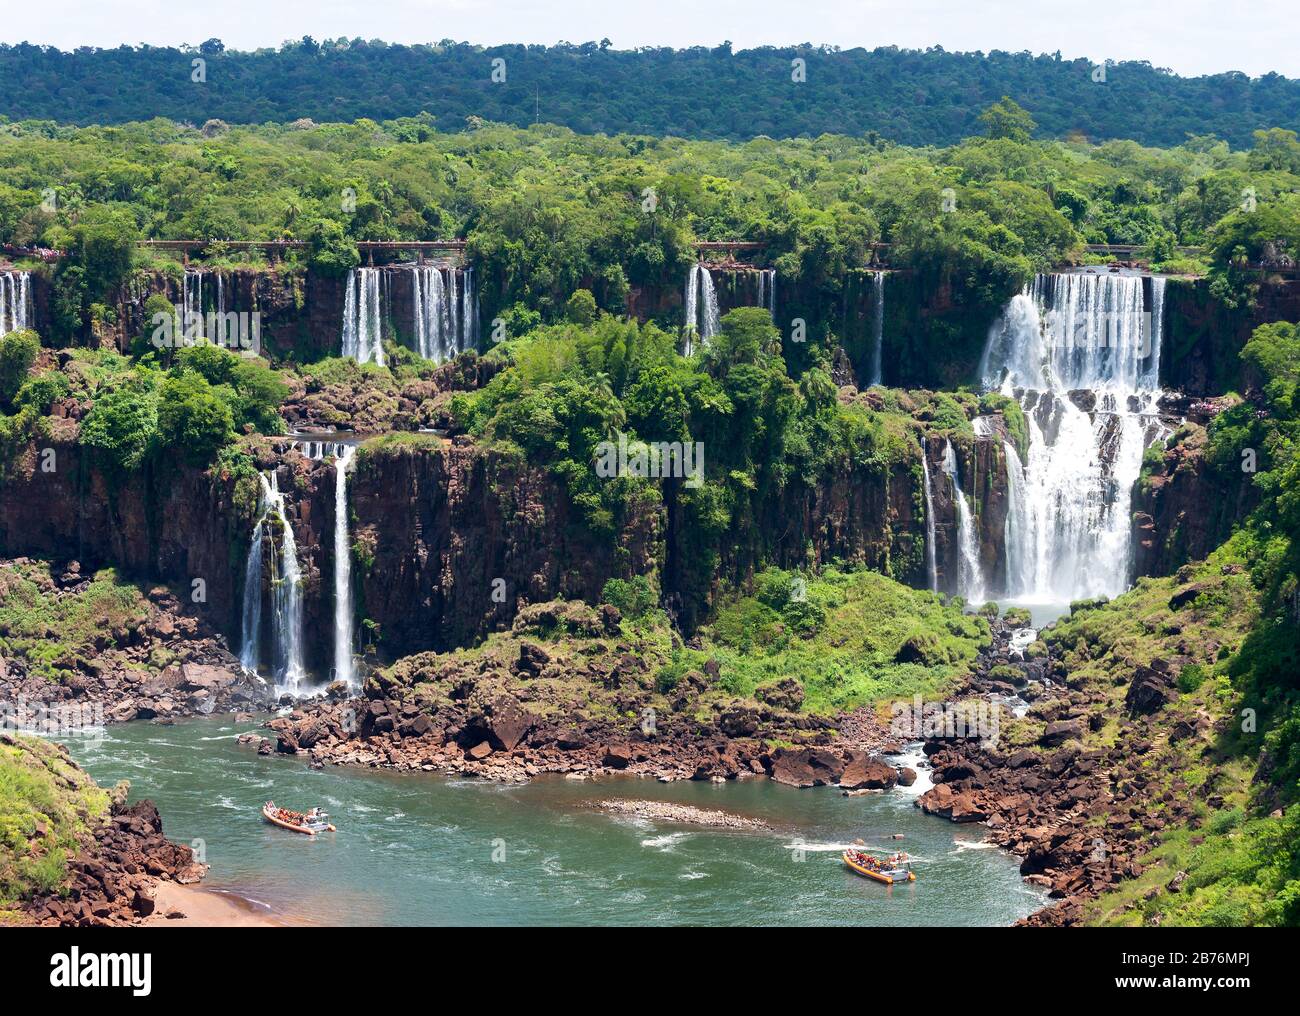 Blick auf die Cataratas do Iguaçu / Iguassu Wasserfälle an der Grenze von Brasilien und Argentinien. Regenwaldlandschaft mit mehreren Wasserfällen und Felsen sichtbar. Stockfoto